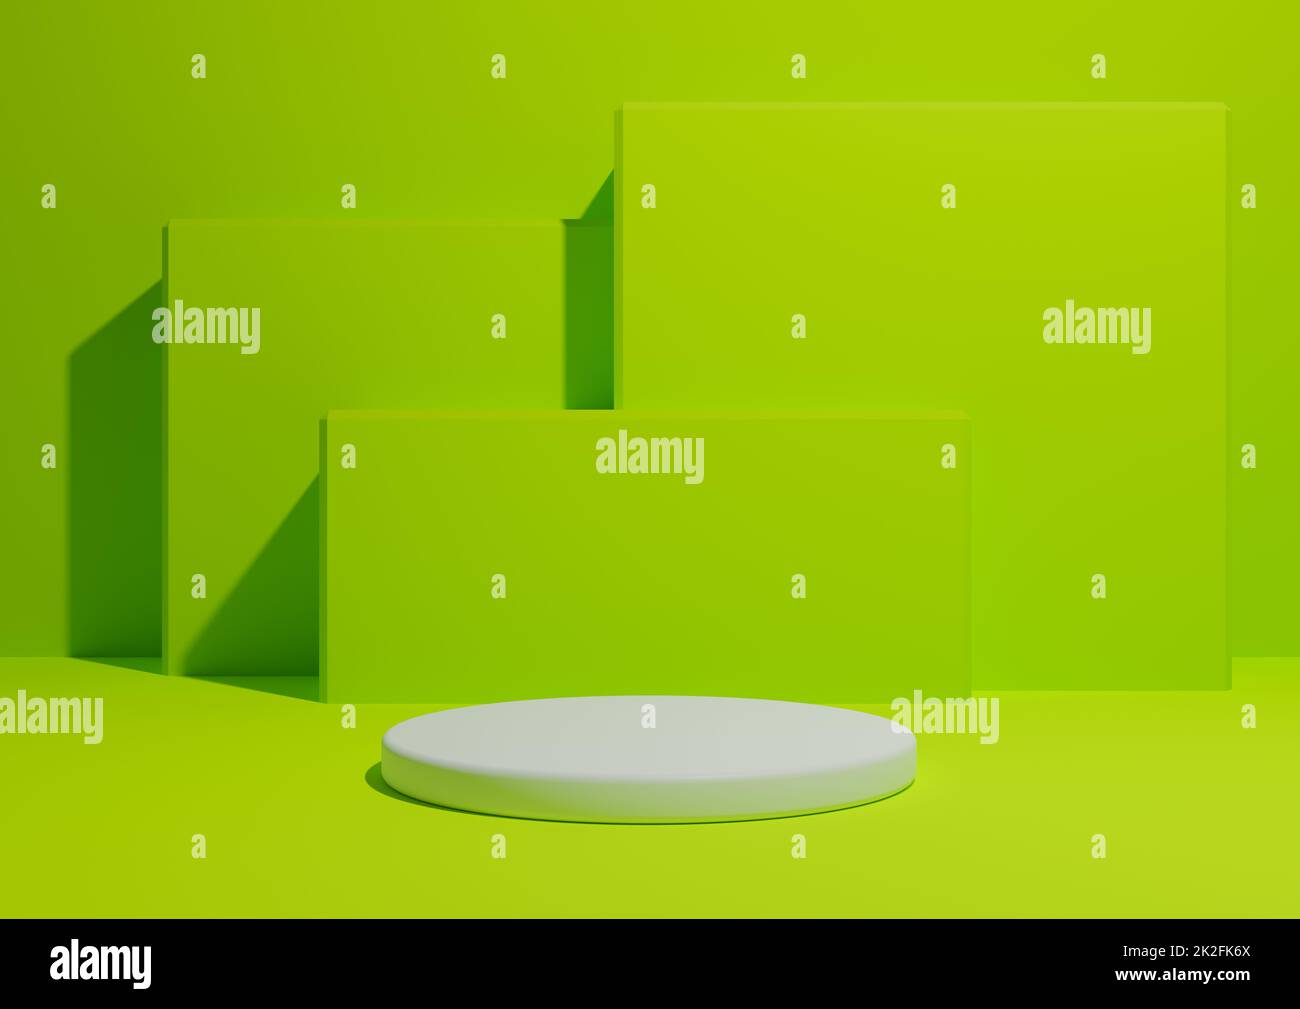 Leuchtendes, limitiertes, neongrünes 3D-Rendering eines einfachen, minimalistischen Produktanzeigehintergrunds mit einem Podium oder Standfuß und geometrischen quadratischen Formen im Hintergrund. Stockfoto